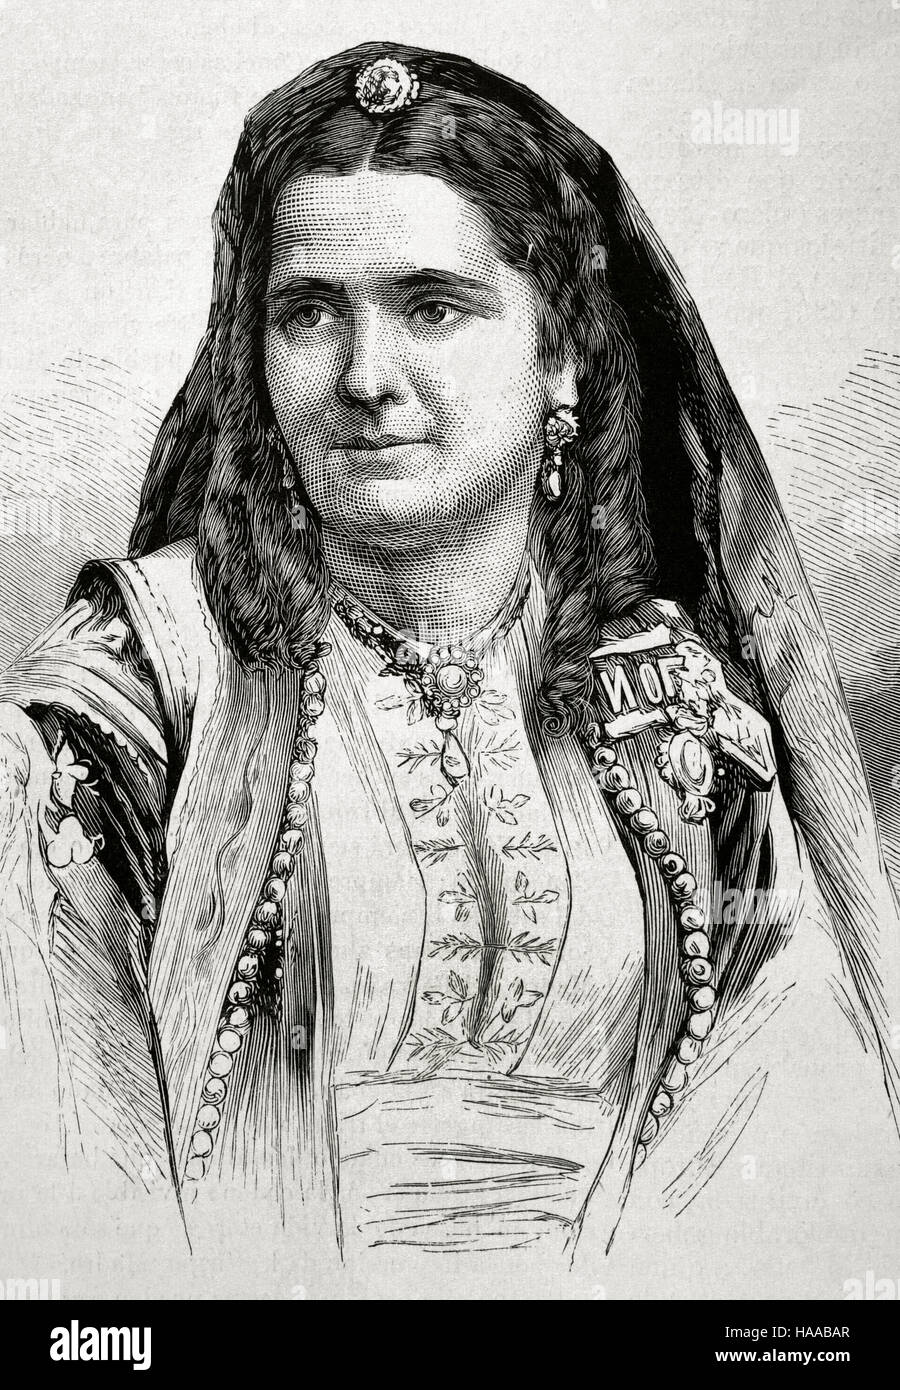 Milena Vukotic (1847-1923). Queen Consort of Montenegro, as wife of King Nicholas I of Montenegro (1920-1918). Portrait. Engraved by Paris in 'La Ilustración española y americana', 1875. Stock Photo